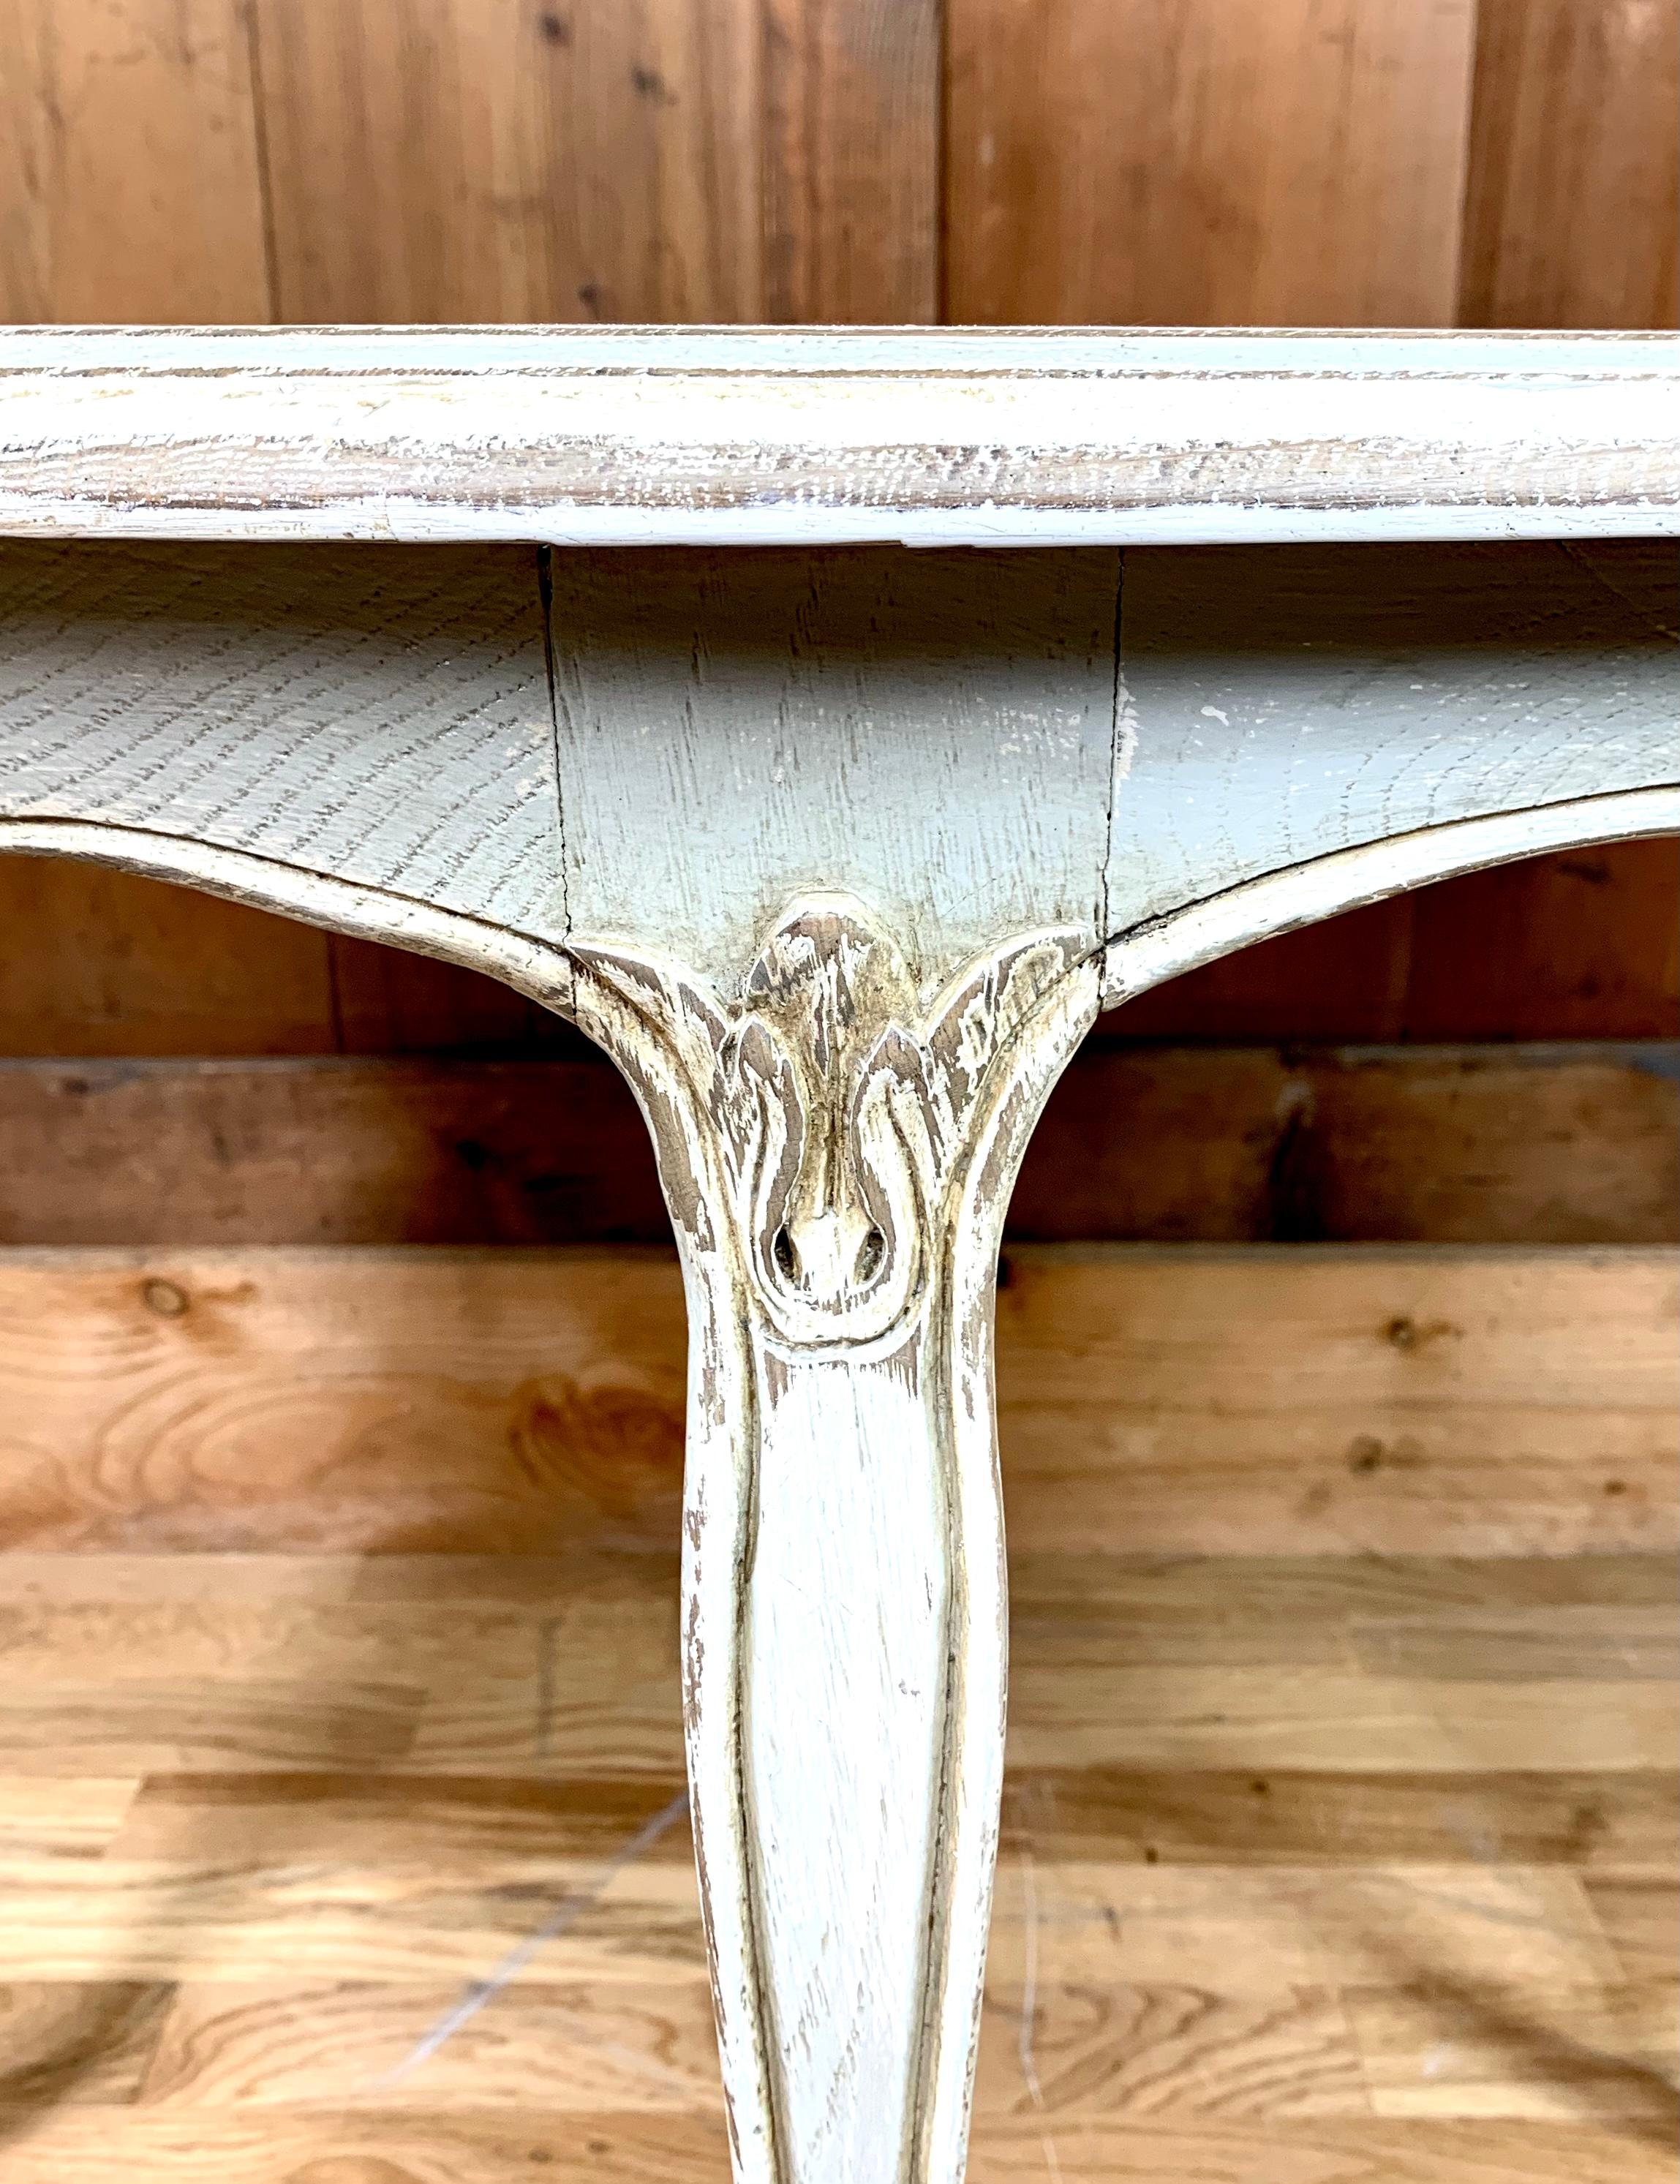 Charmanter runder Couchtisch im Stil Louis XV aus Holz. Dieser Tisch ist in blaugrauen Tönen patiniert, was ihm einen Vintage- oder Shabby-Chic-Look verleiht. Die Beine sind geschwungen und die Oberseite der Beine ist mit floralen Motiven